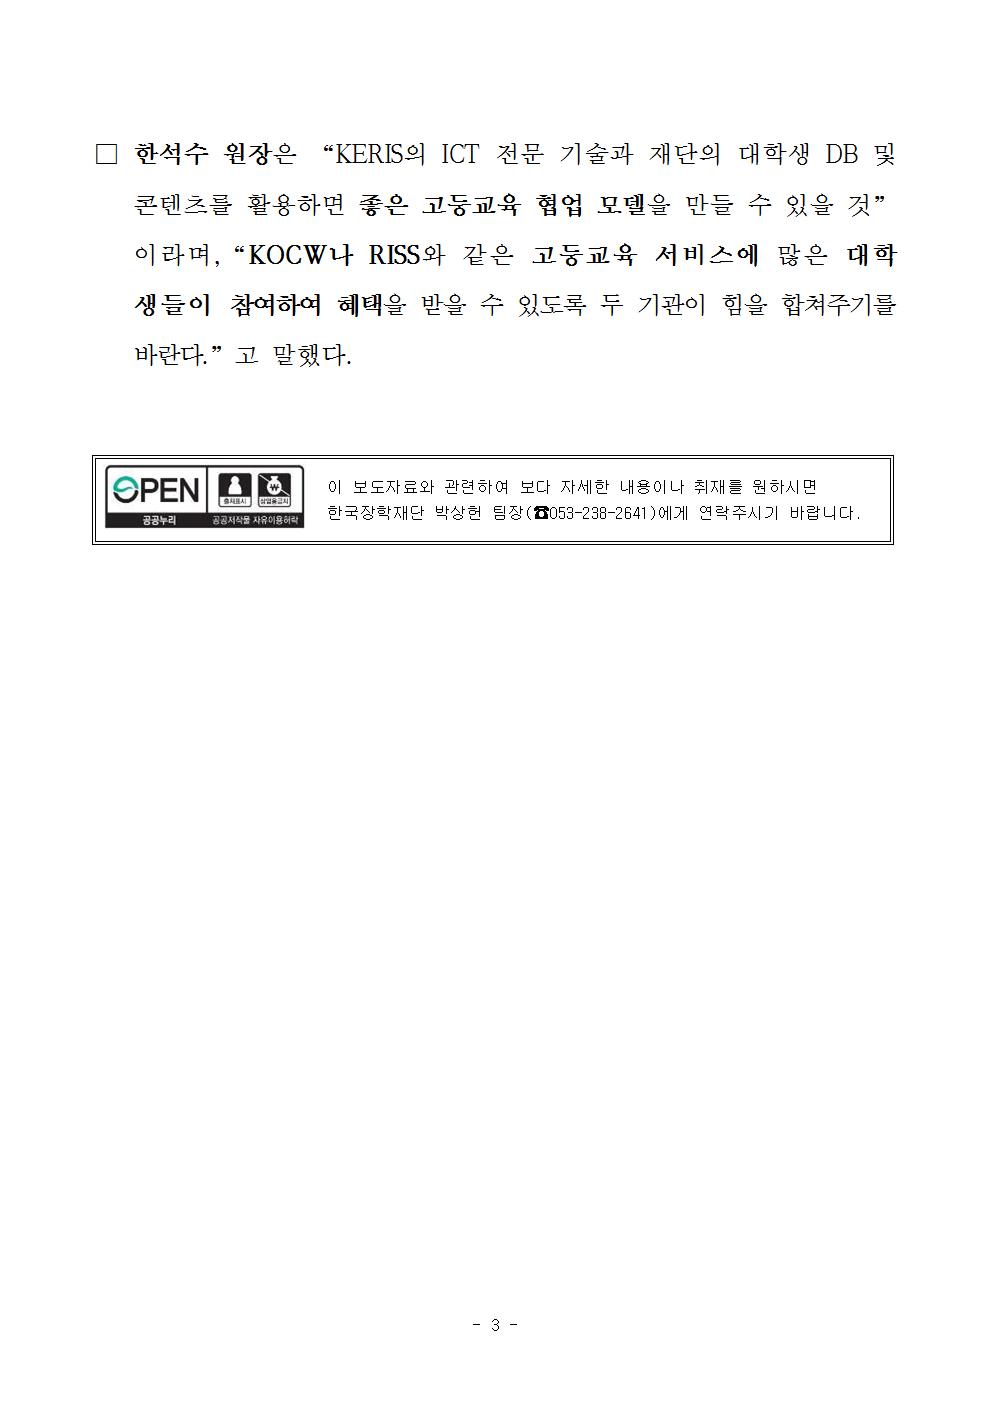 03-23(목)[보도자료] 한국교육학술정보원과 정보기술인력 상호 교류 등을 위한 업무협약 체결003.jpg